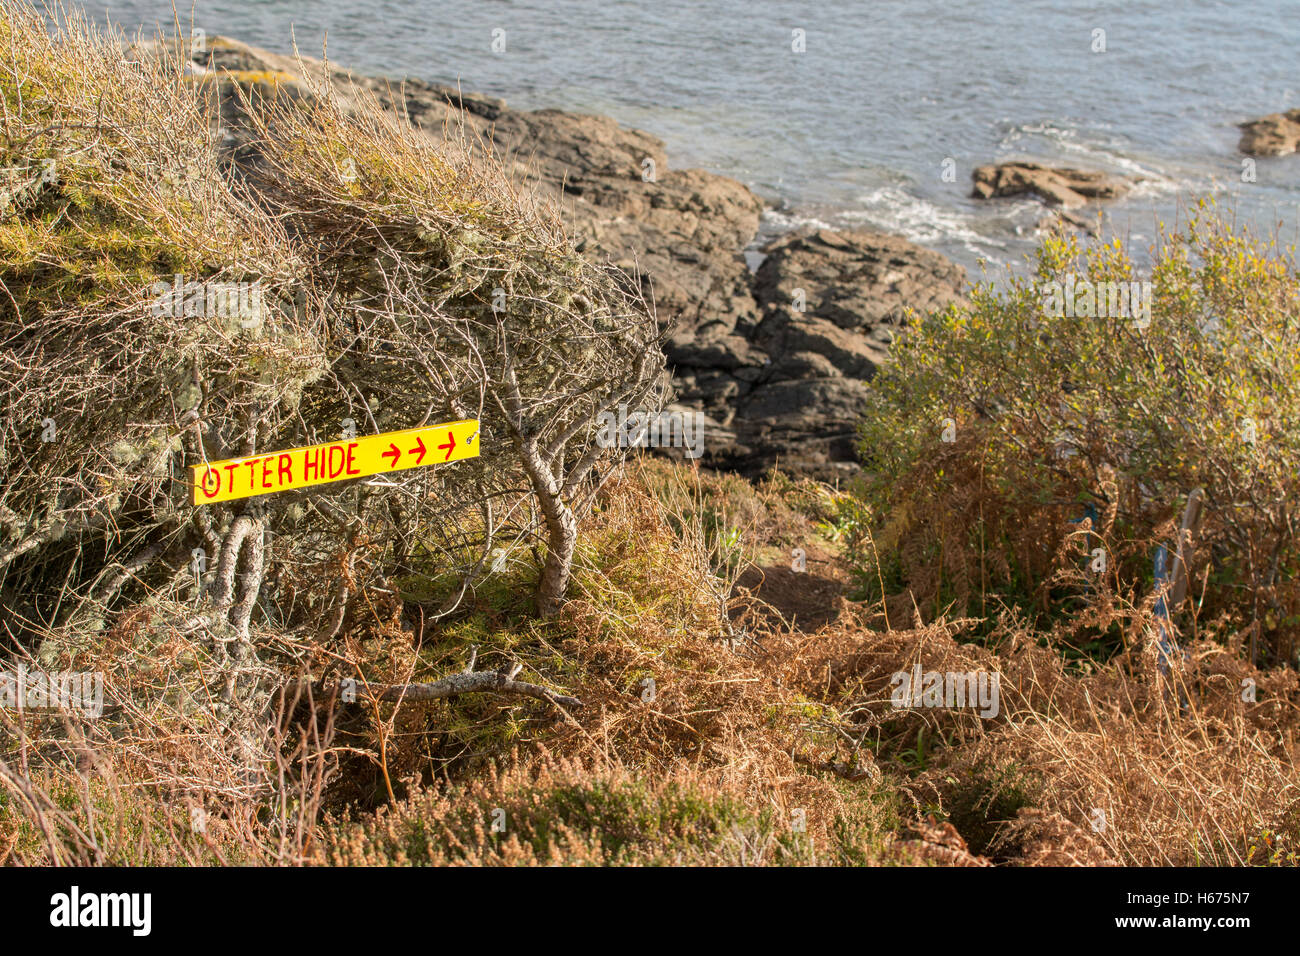 Otter nascondi segno, Skye Bosco Giardino, Armadale, Isola di Skye, Scotland, Regno Unito Foto Stock